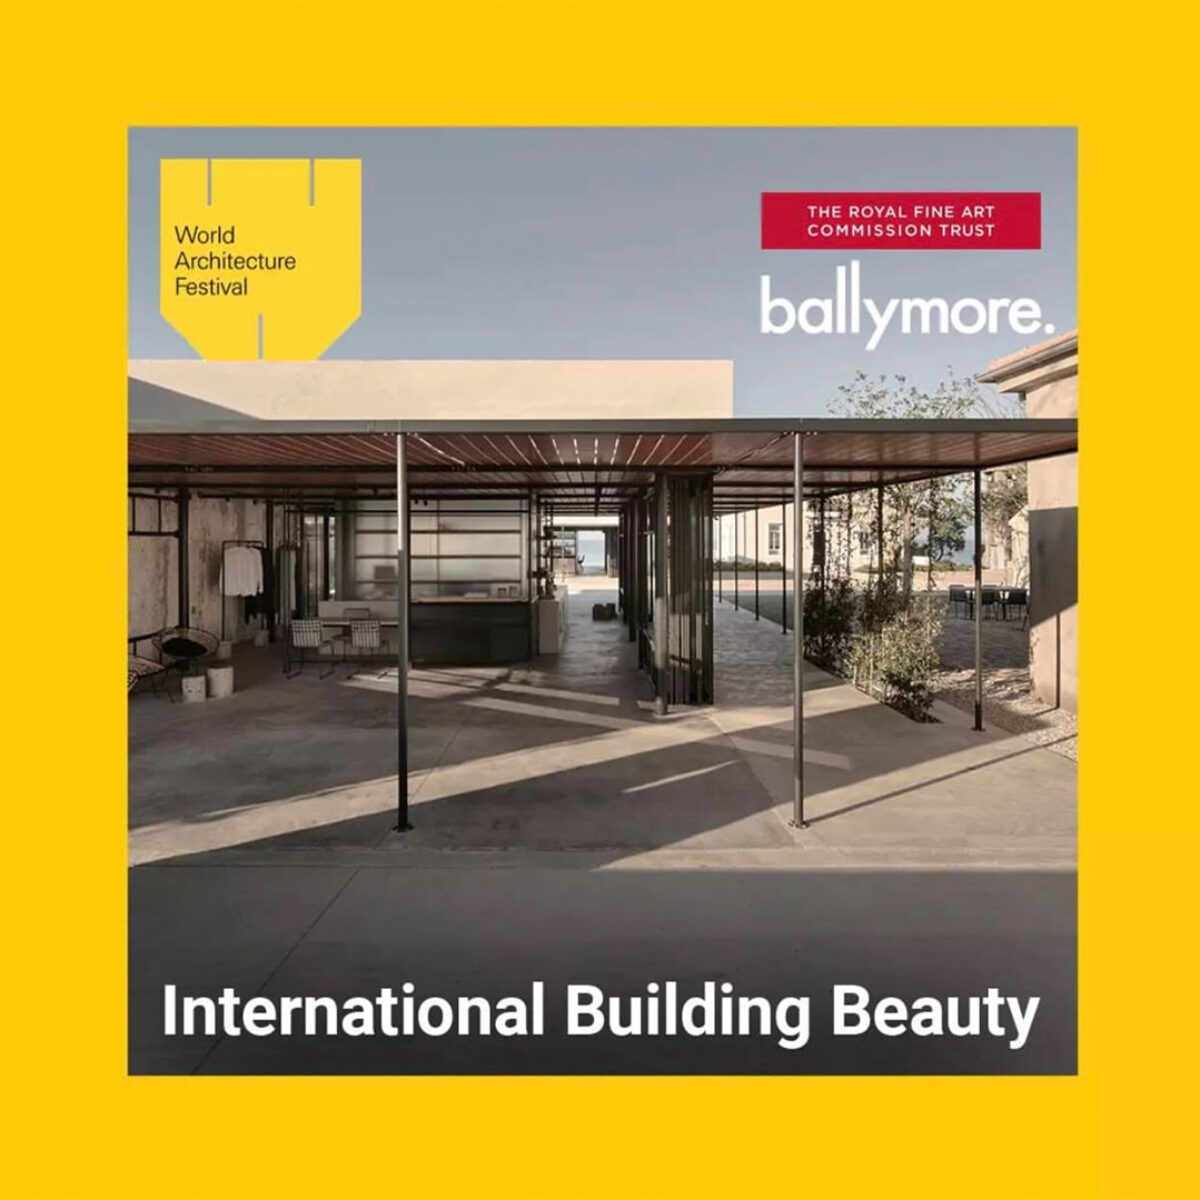 Dexamenes wins International Building Beauty Prize in WAF 2022